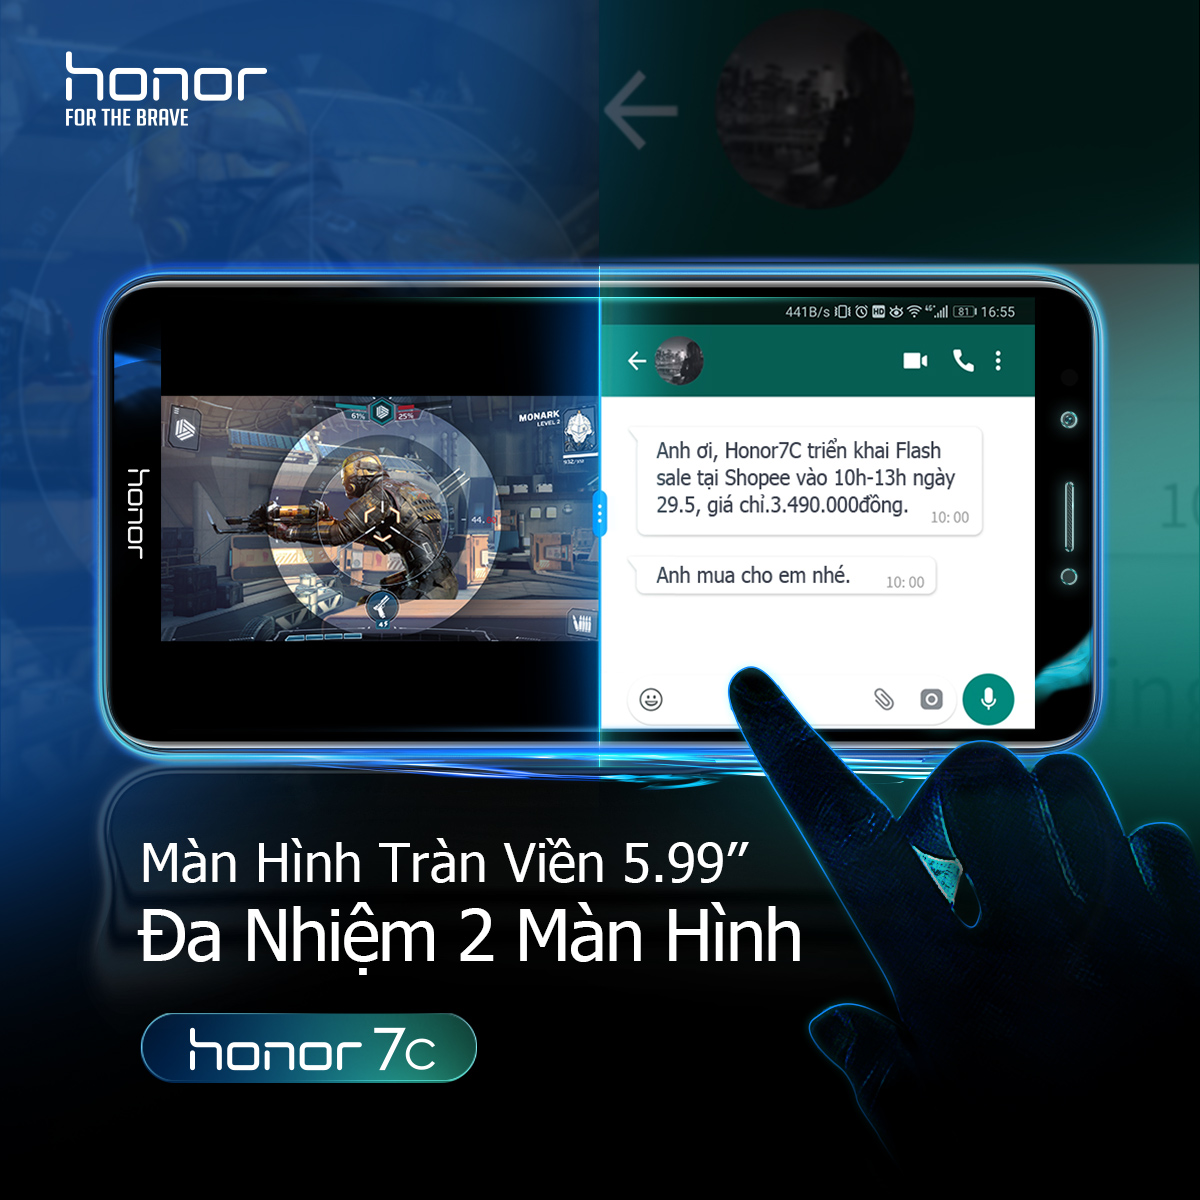 Honor 7c với màn hình tràn viền 5.99'',đa nhiệm 2 màn hình.